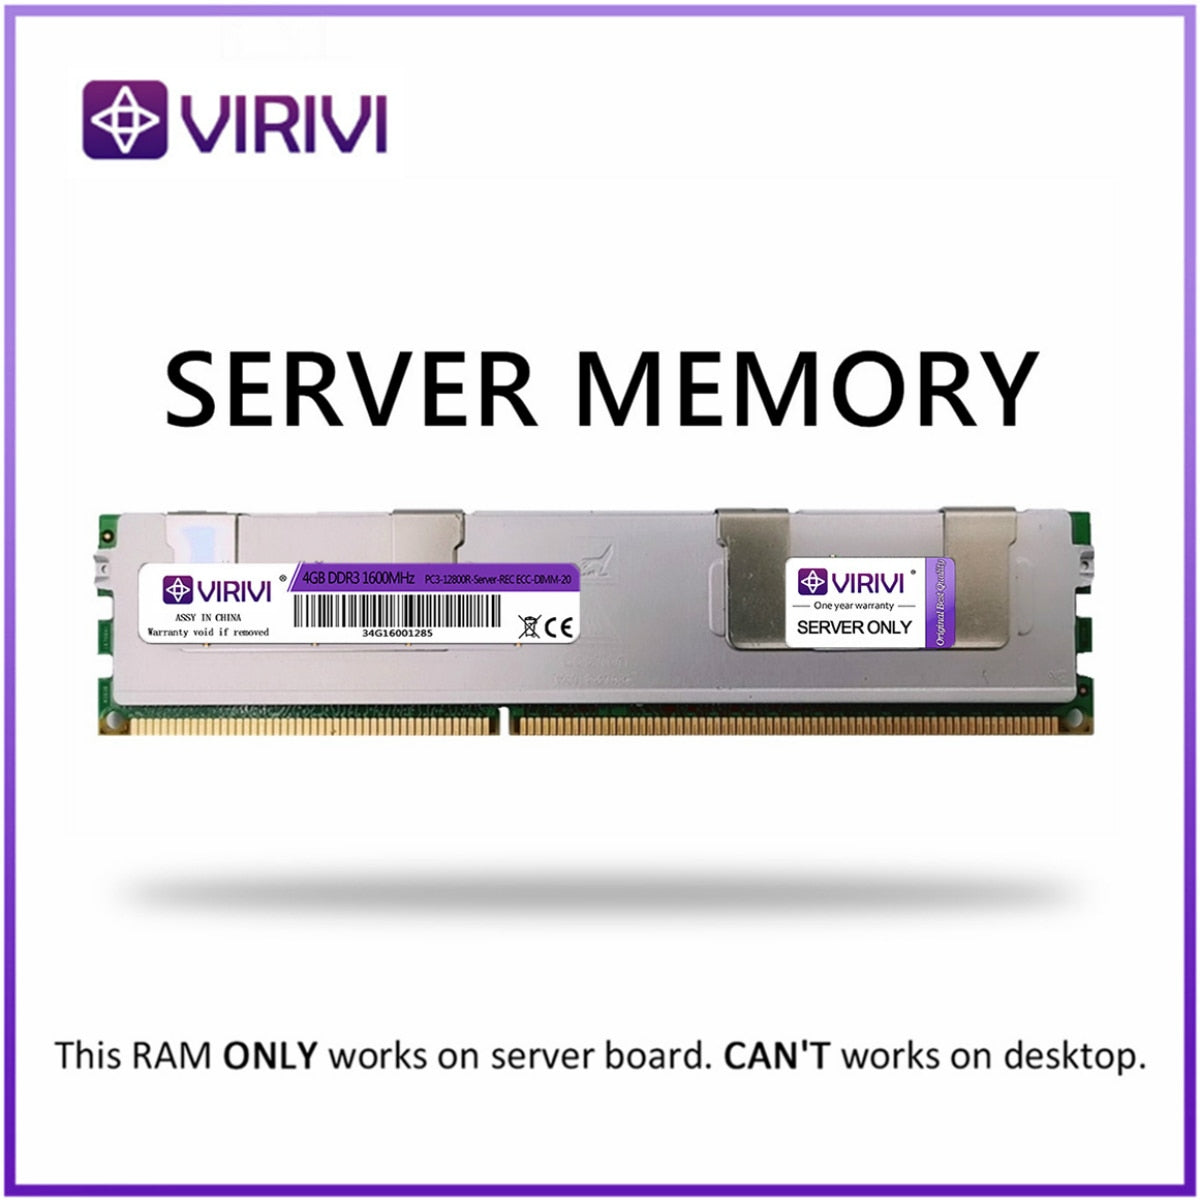 RAM with Heat Sink DDR3 4G 8G 16G 32G 64GB 1066 1333 1600 1866Mhz REG ECC VIRIVI Server Memory 2011 CPU X58 X79 Motherboard Dimm